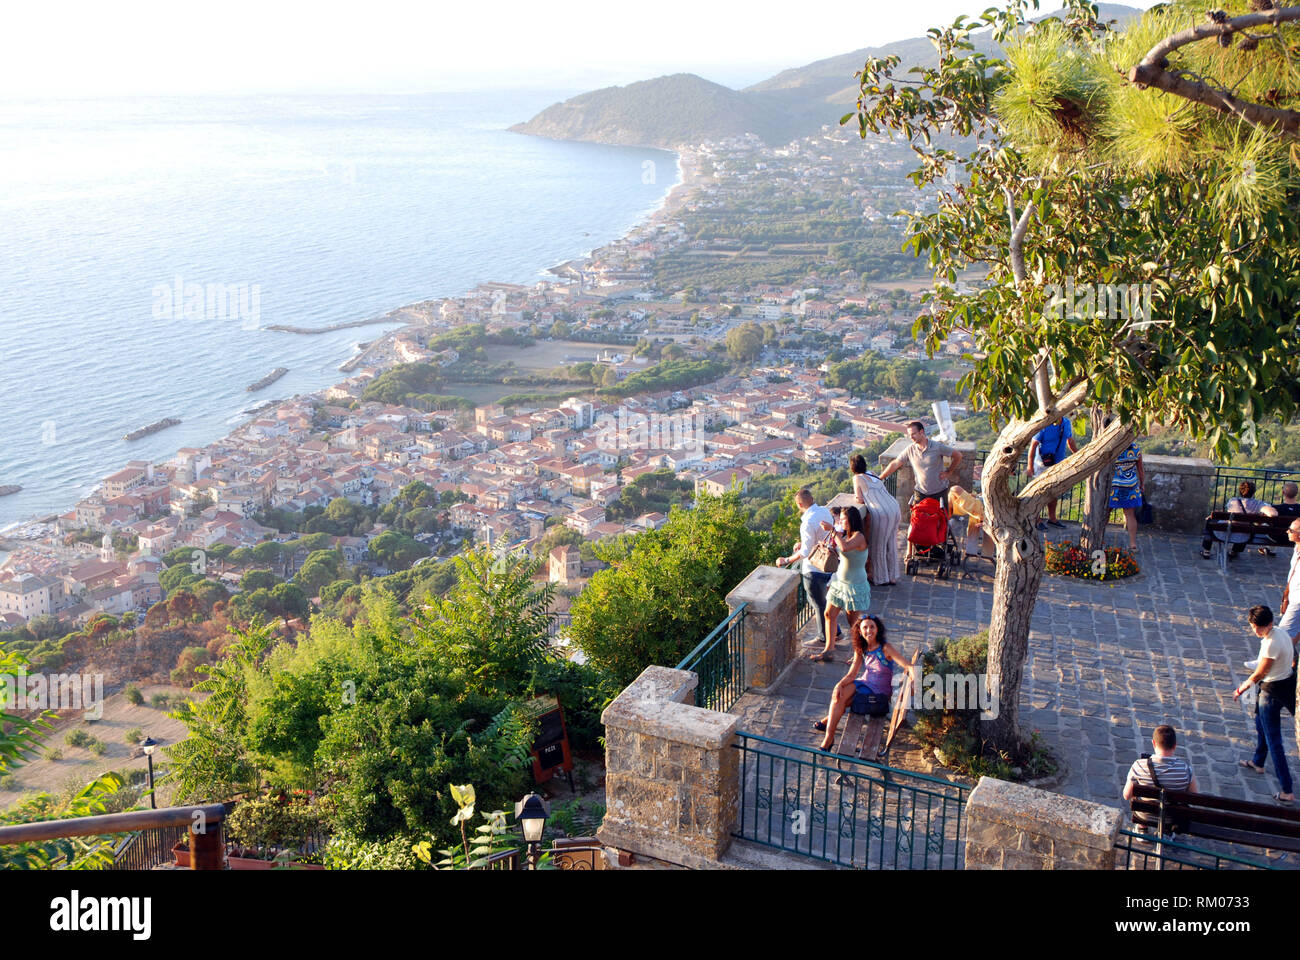 Beaucoup de gens sur la terrasse panoramique donnant sur la côte de Santa Maria di Castellabate ville région du Cilento salerno Italie 2018 Banque D'Images